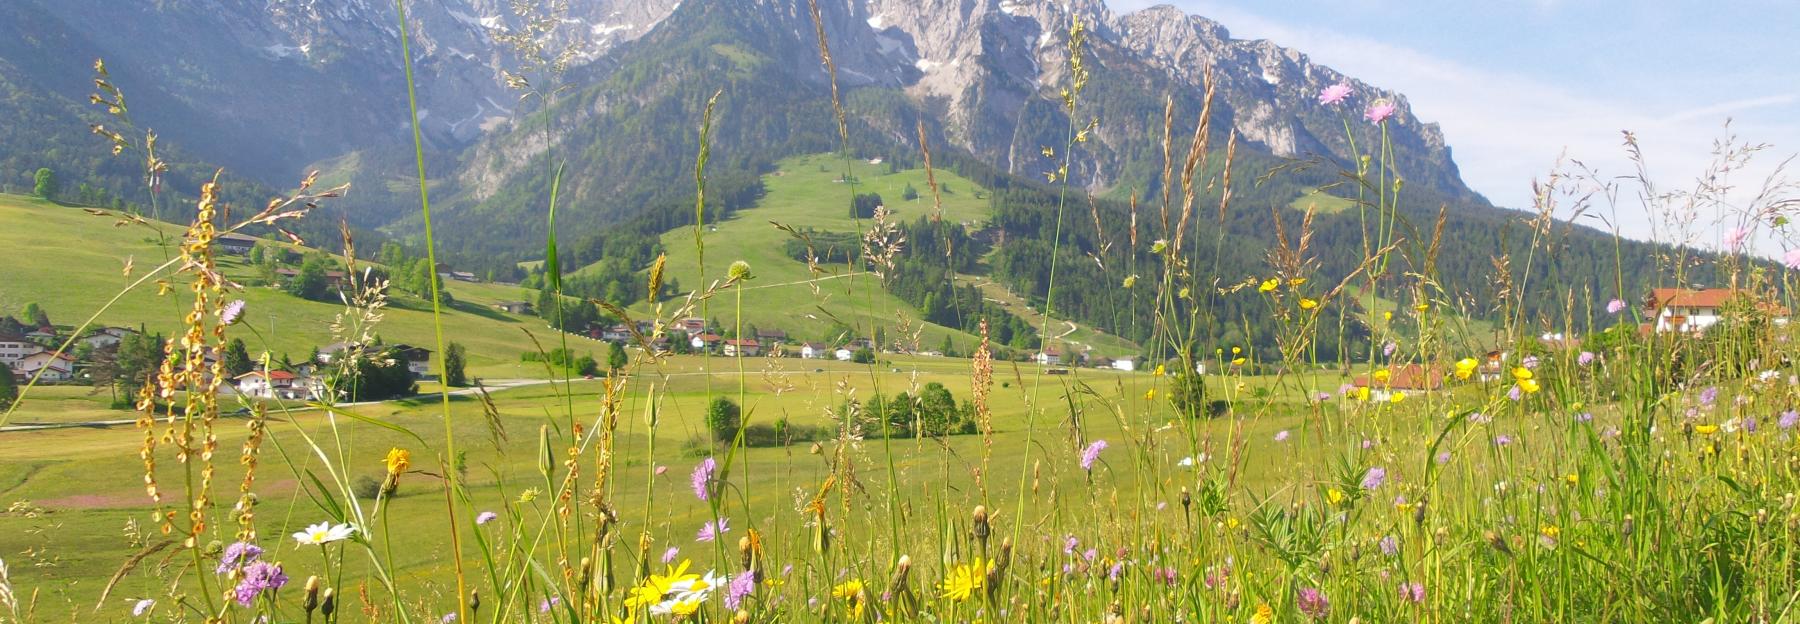 bunte, extensive Wiesen am Berghang und im Tal, Tirol